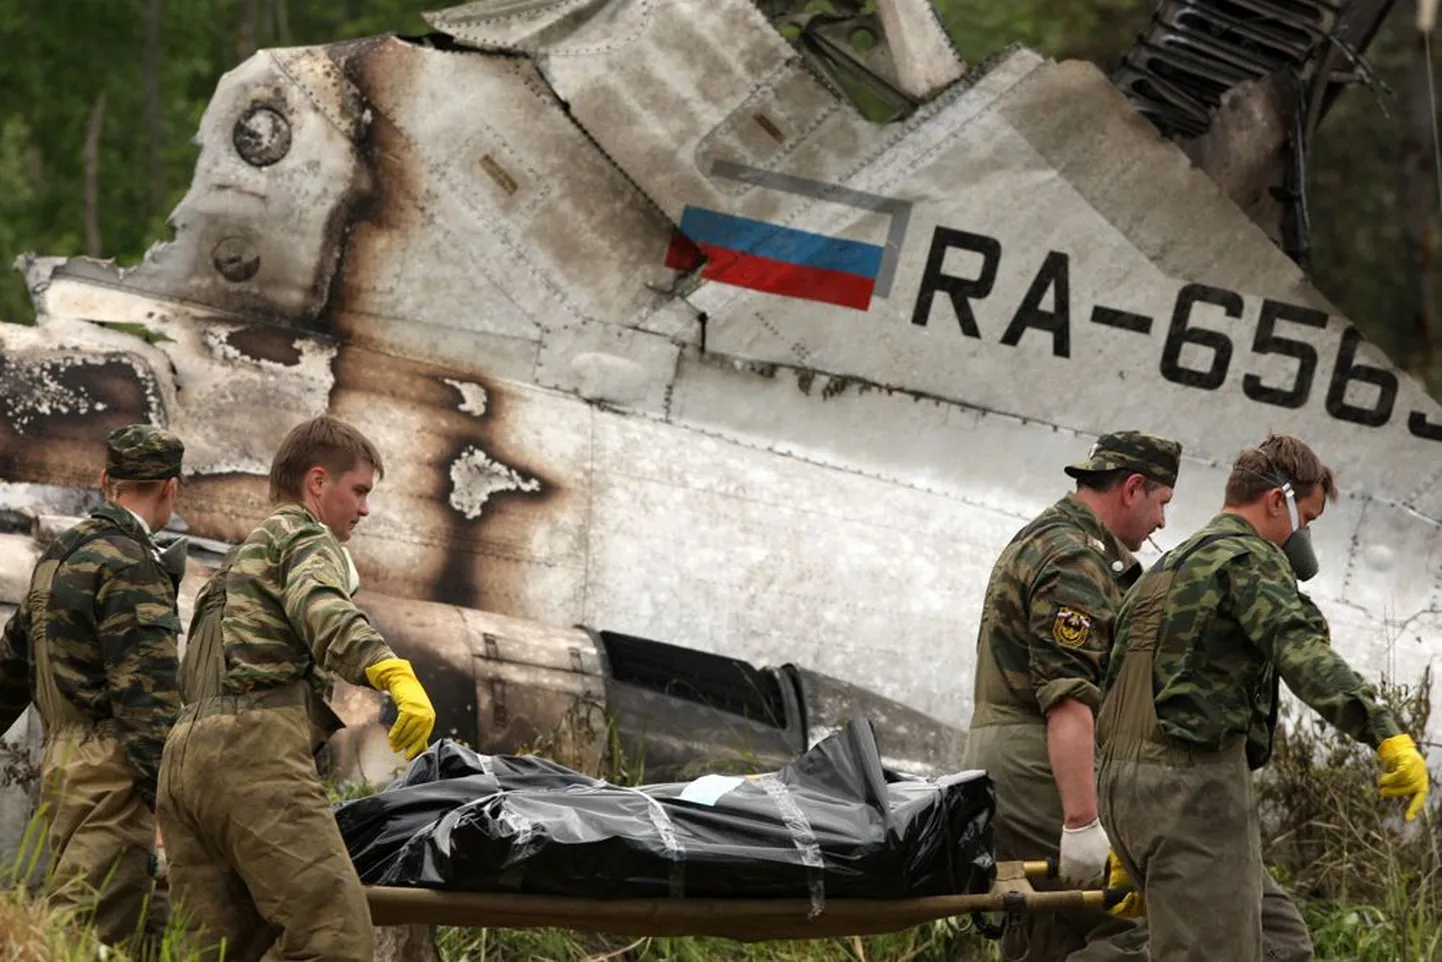 Päästetöötajad Petroskoi lennujaama lähedal, kus kukkus alla Vene lennufirmale kuulunud reisilennuk.